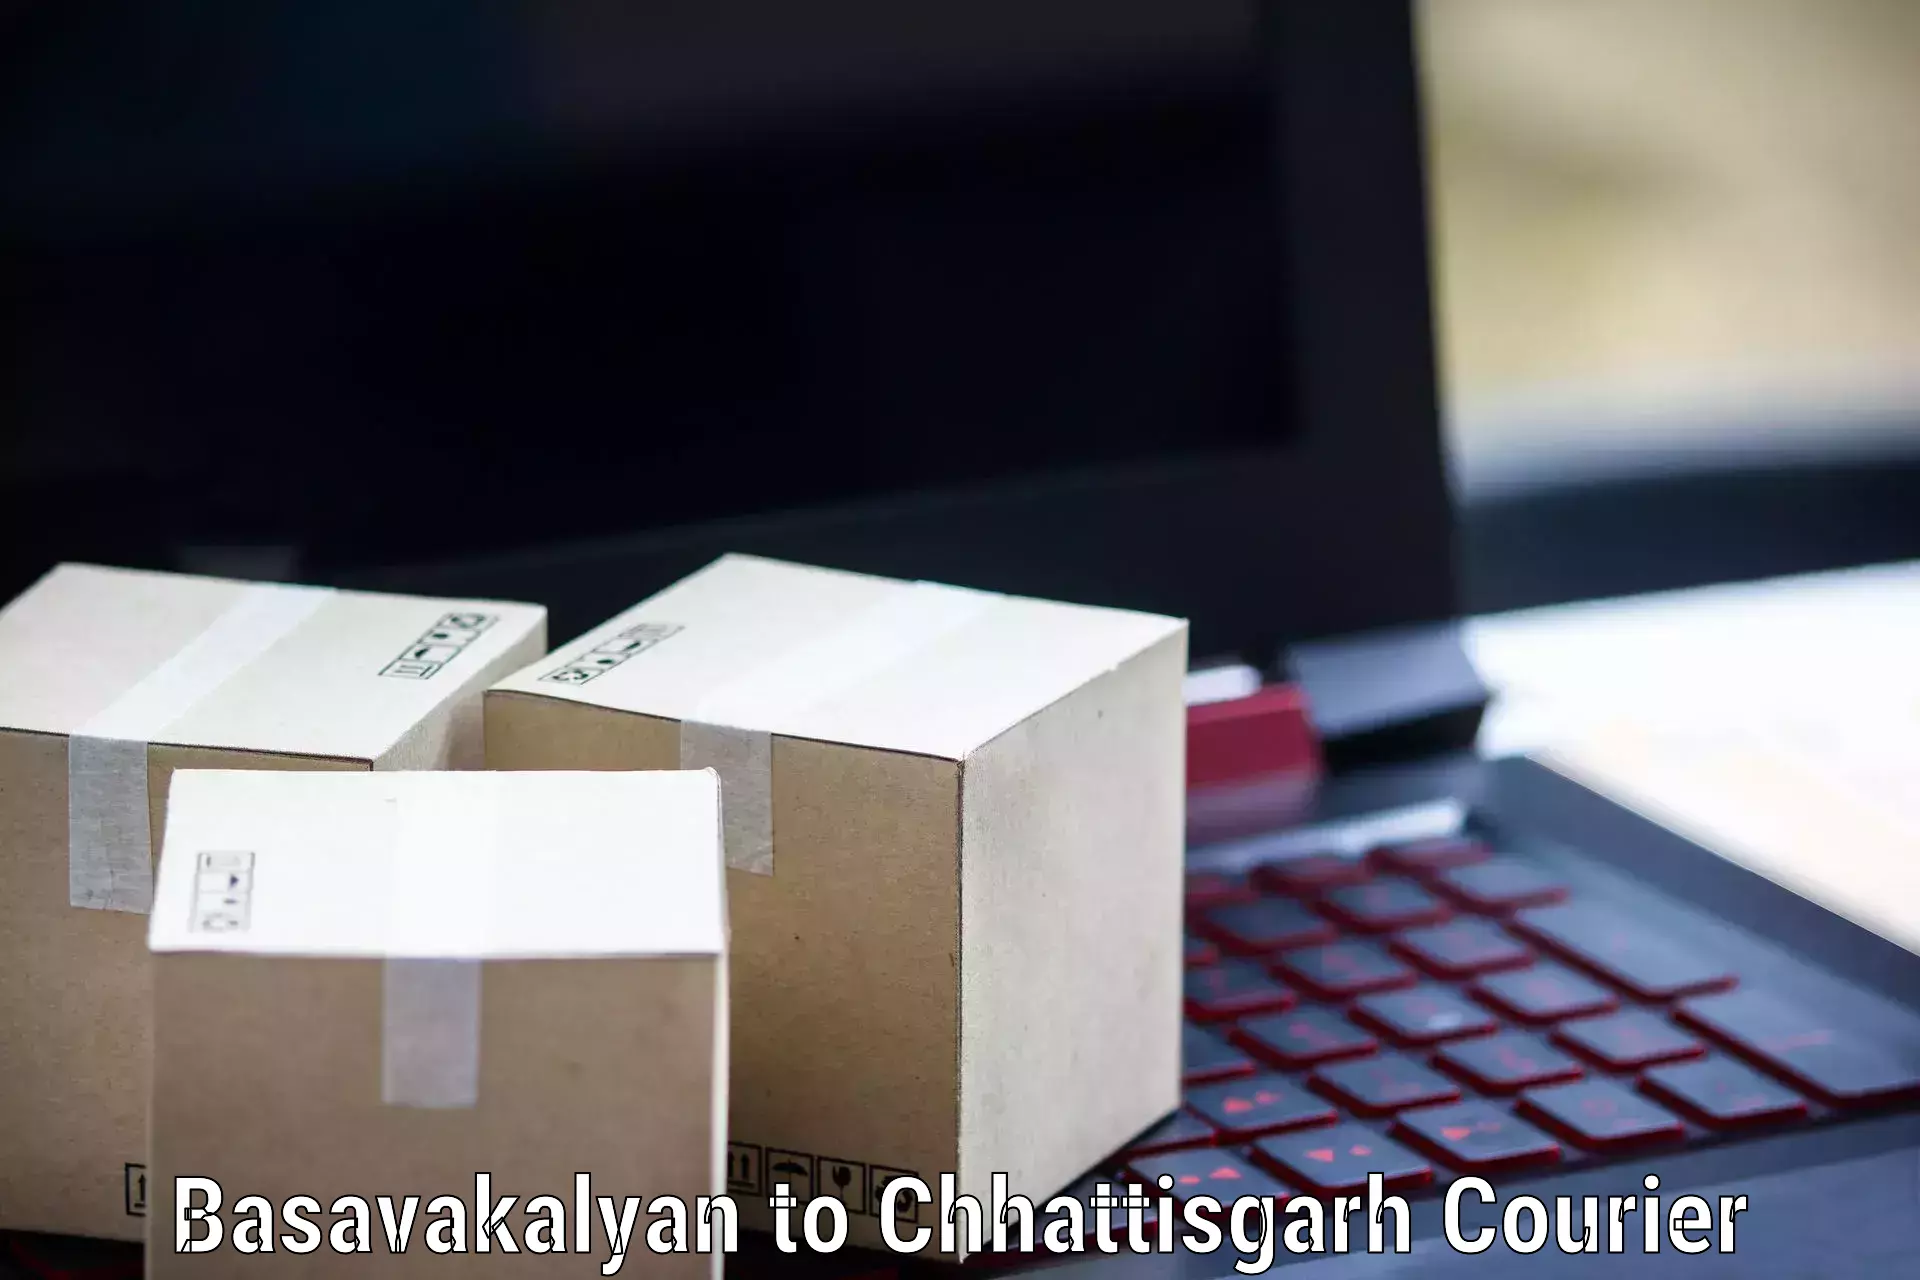 State-of-the-art courier technology Basavakalyan to Pandariya